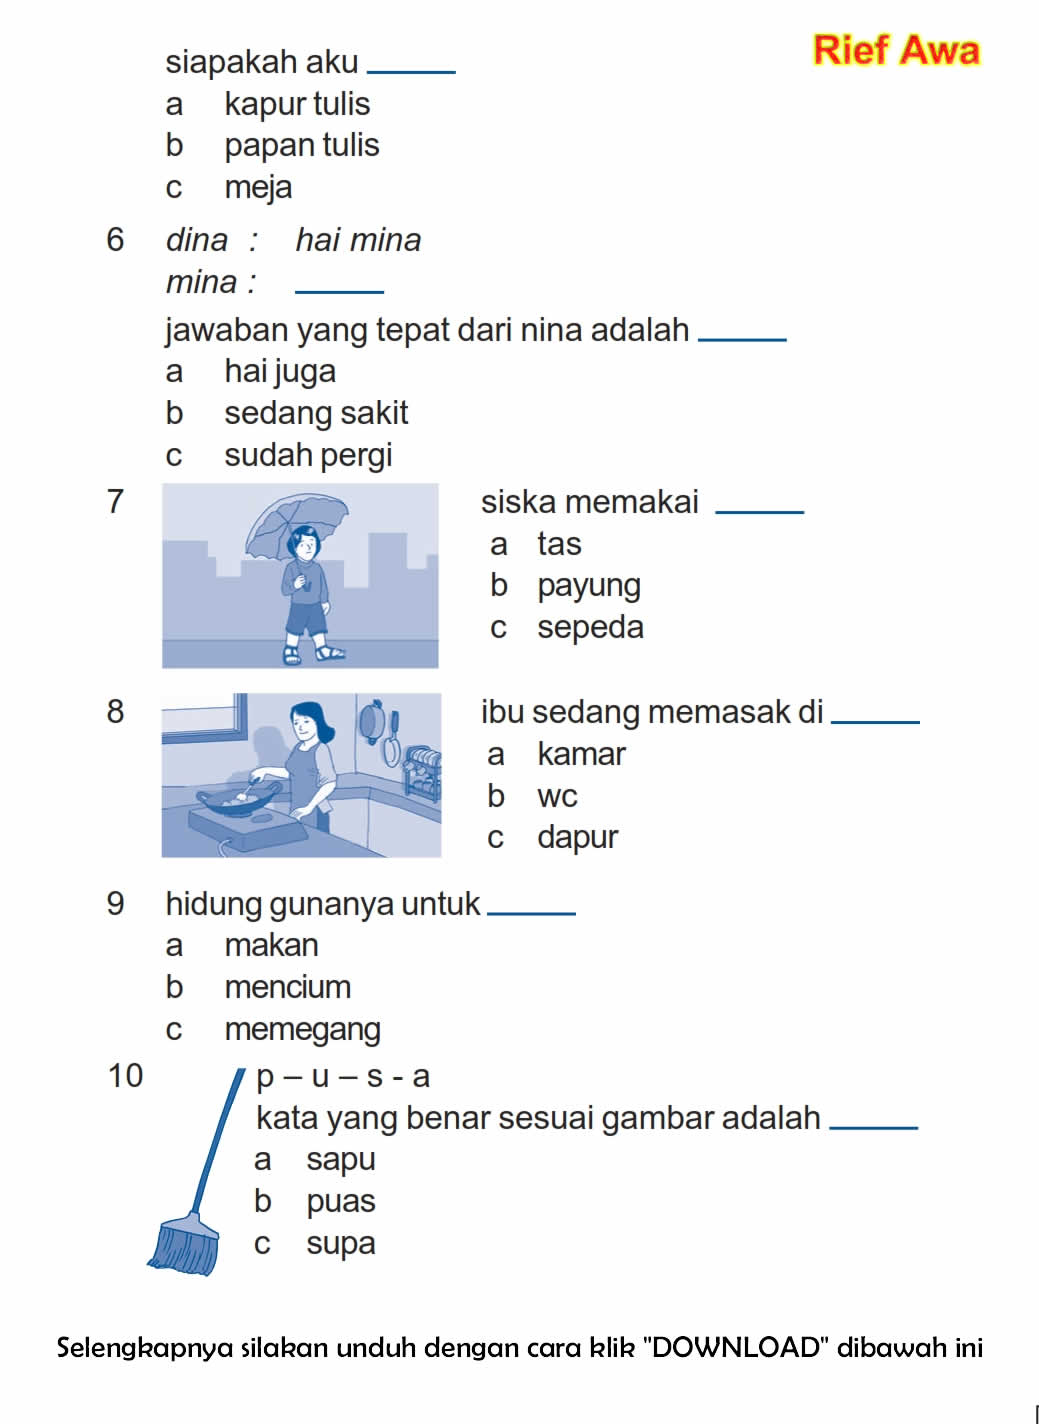 Download Soal UAS Ganjil Bahasa Indonesia Kelas 1 Semester 1 - Rief Awa